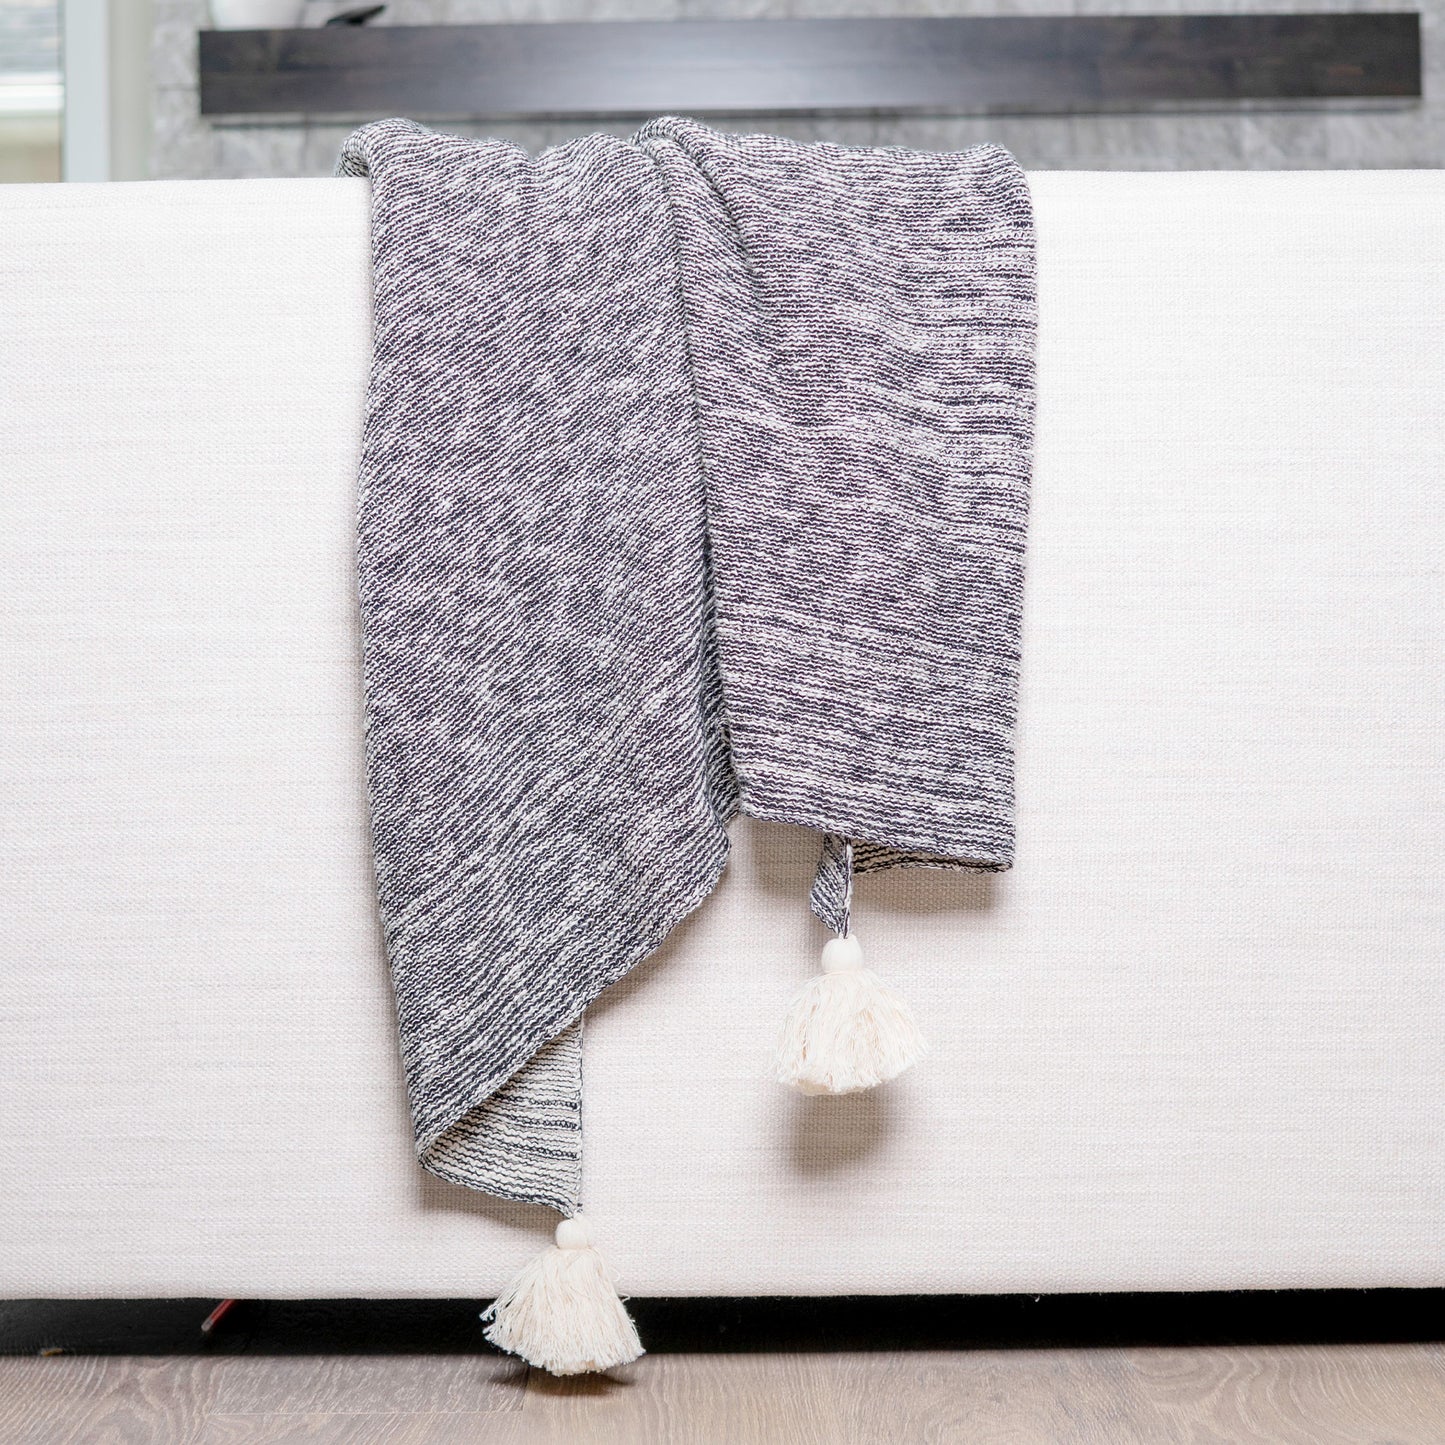 Necalli 50x60" Cotton Decorative Marled Knit Throw Blanket